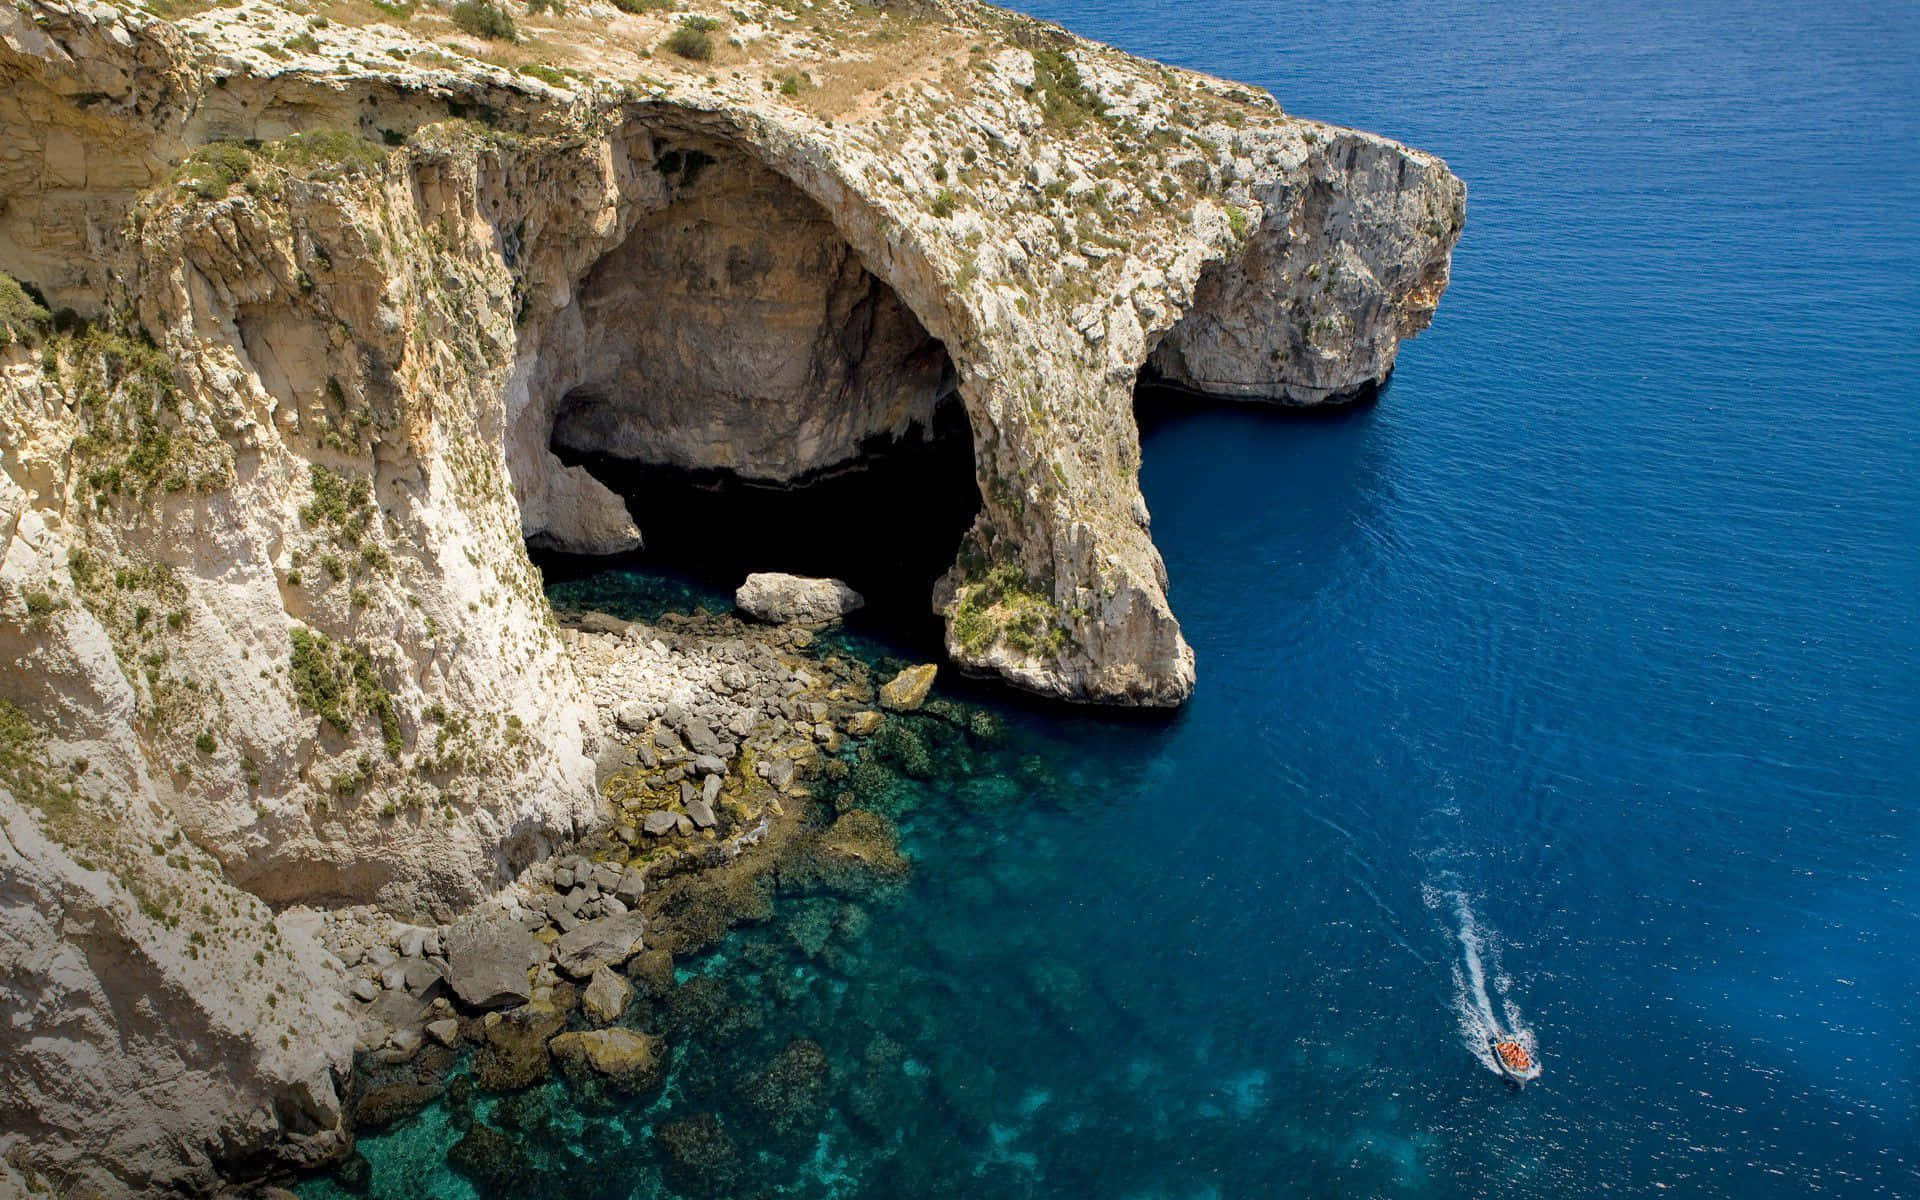 Picturesque Malta Coastline